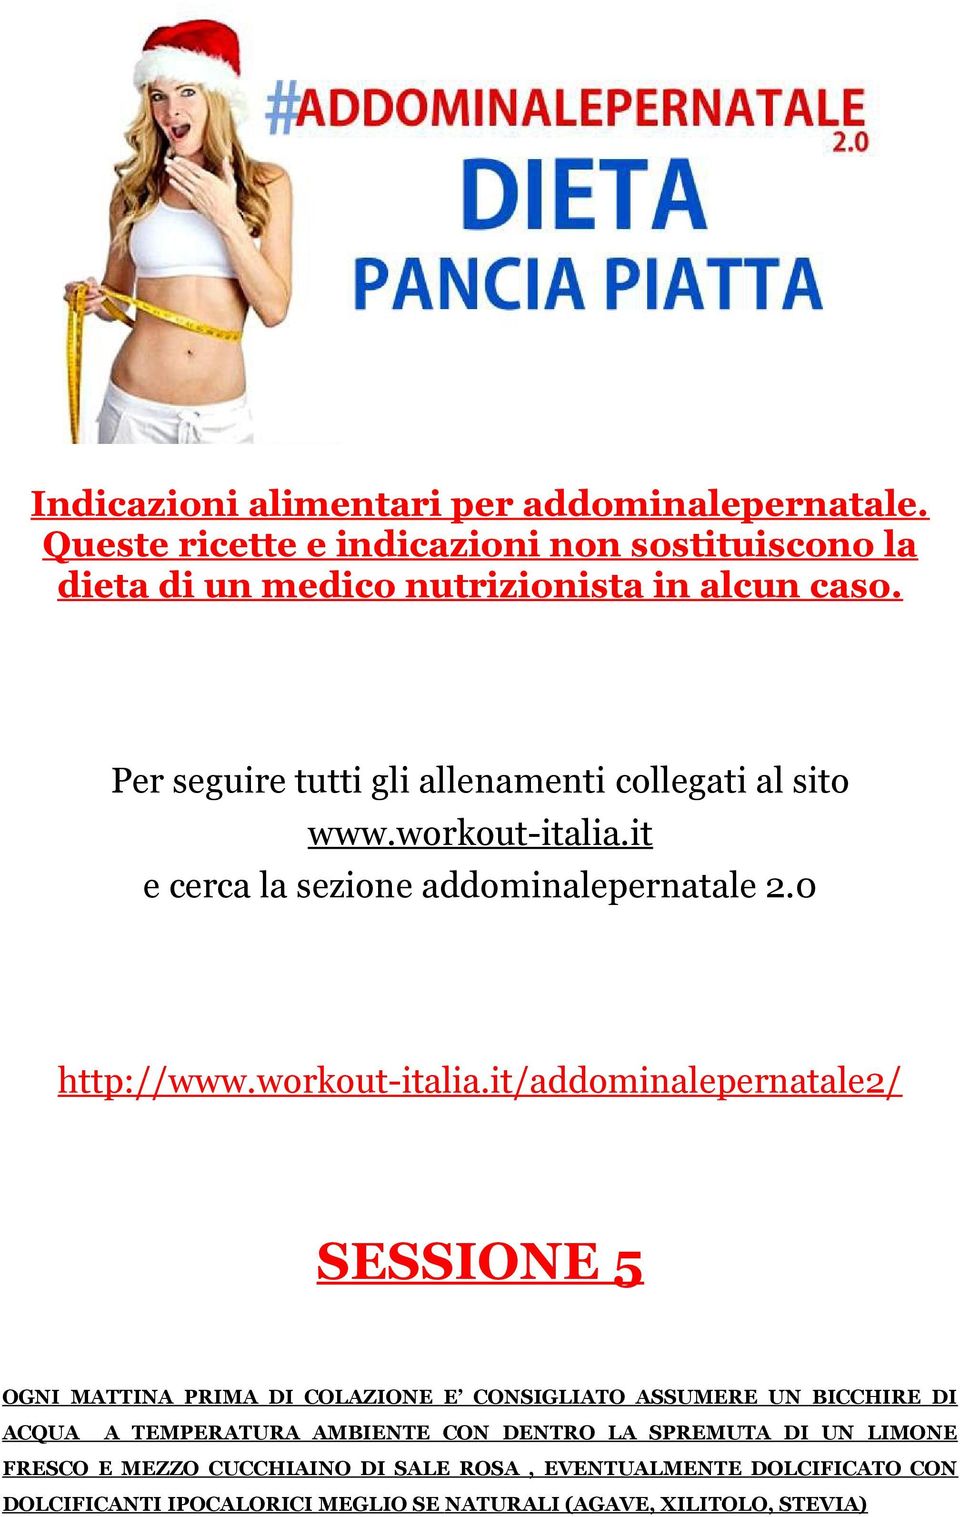 it e cerca la sezione addominalepernatale 2.0 http://www.workout-italia.